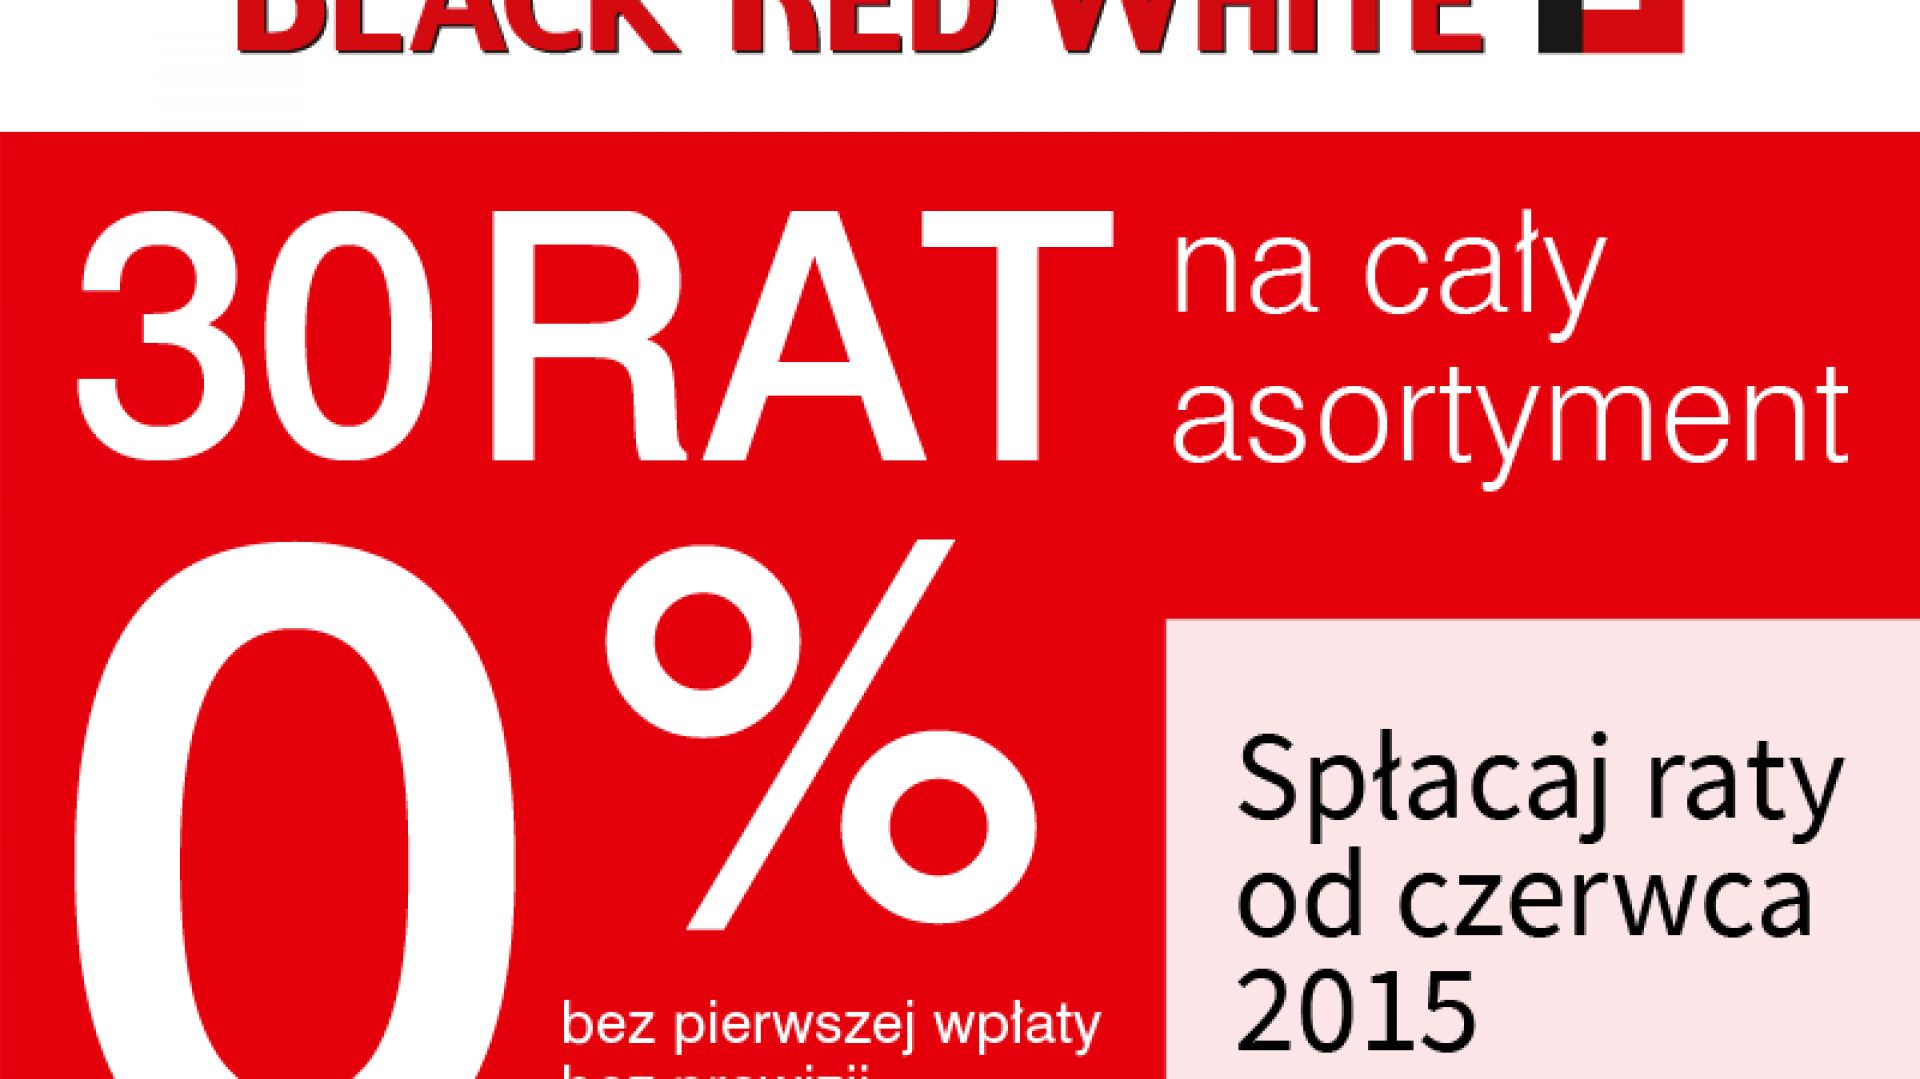 Promocja do 40% taniej oraz 30 rat 0% w Black Red White